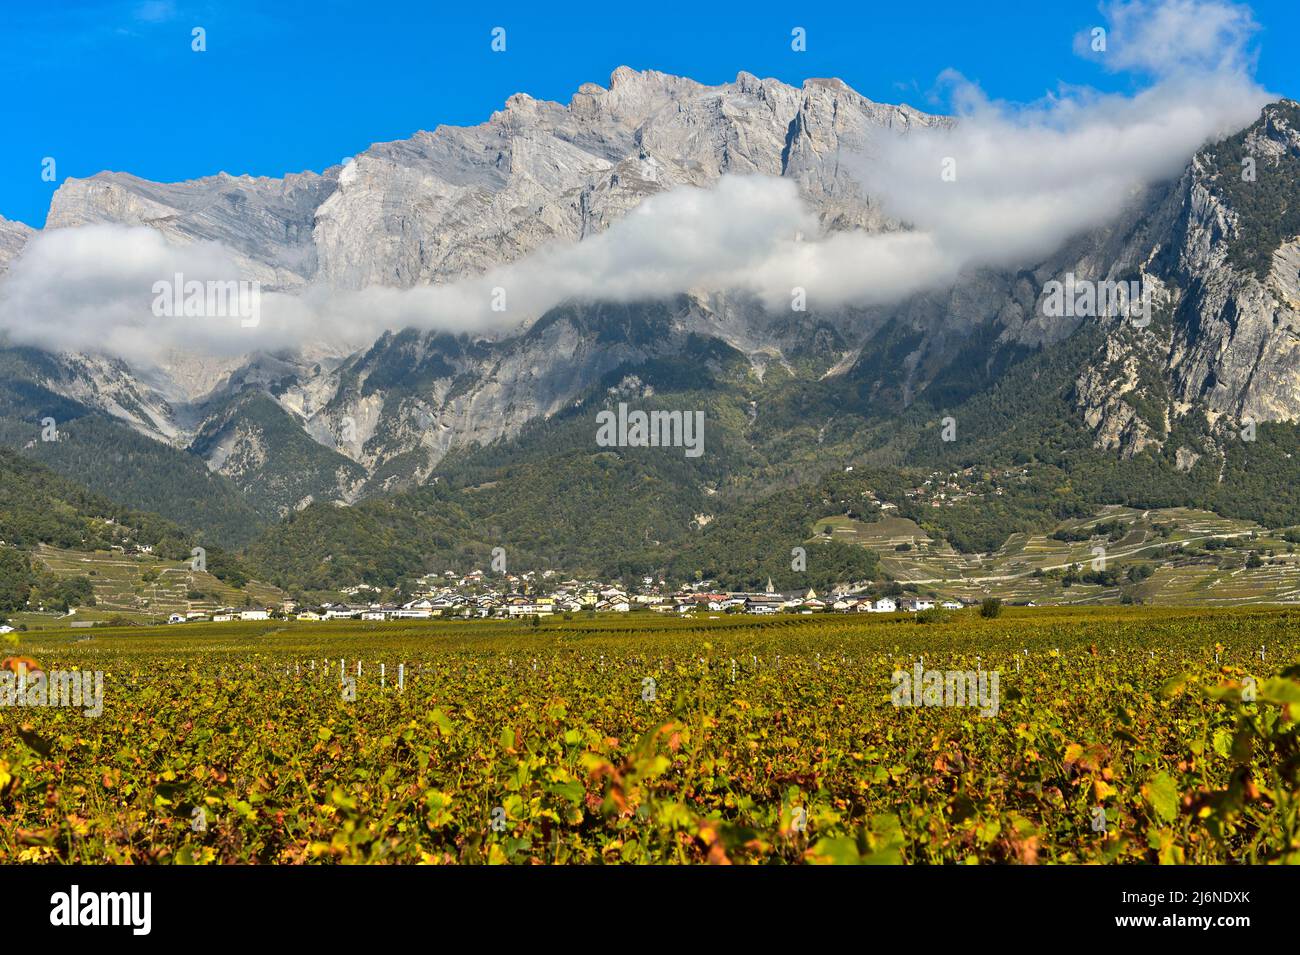 Région viticole de Chamoson en face des falaises du sommet du Haut de Cry, Chamoson, Valais, Suisse Banque D'Images